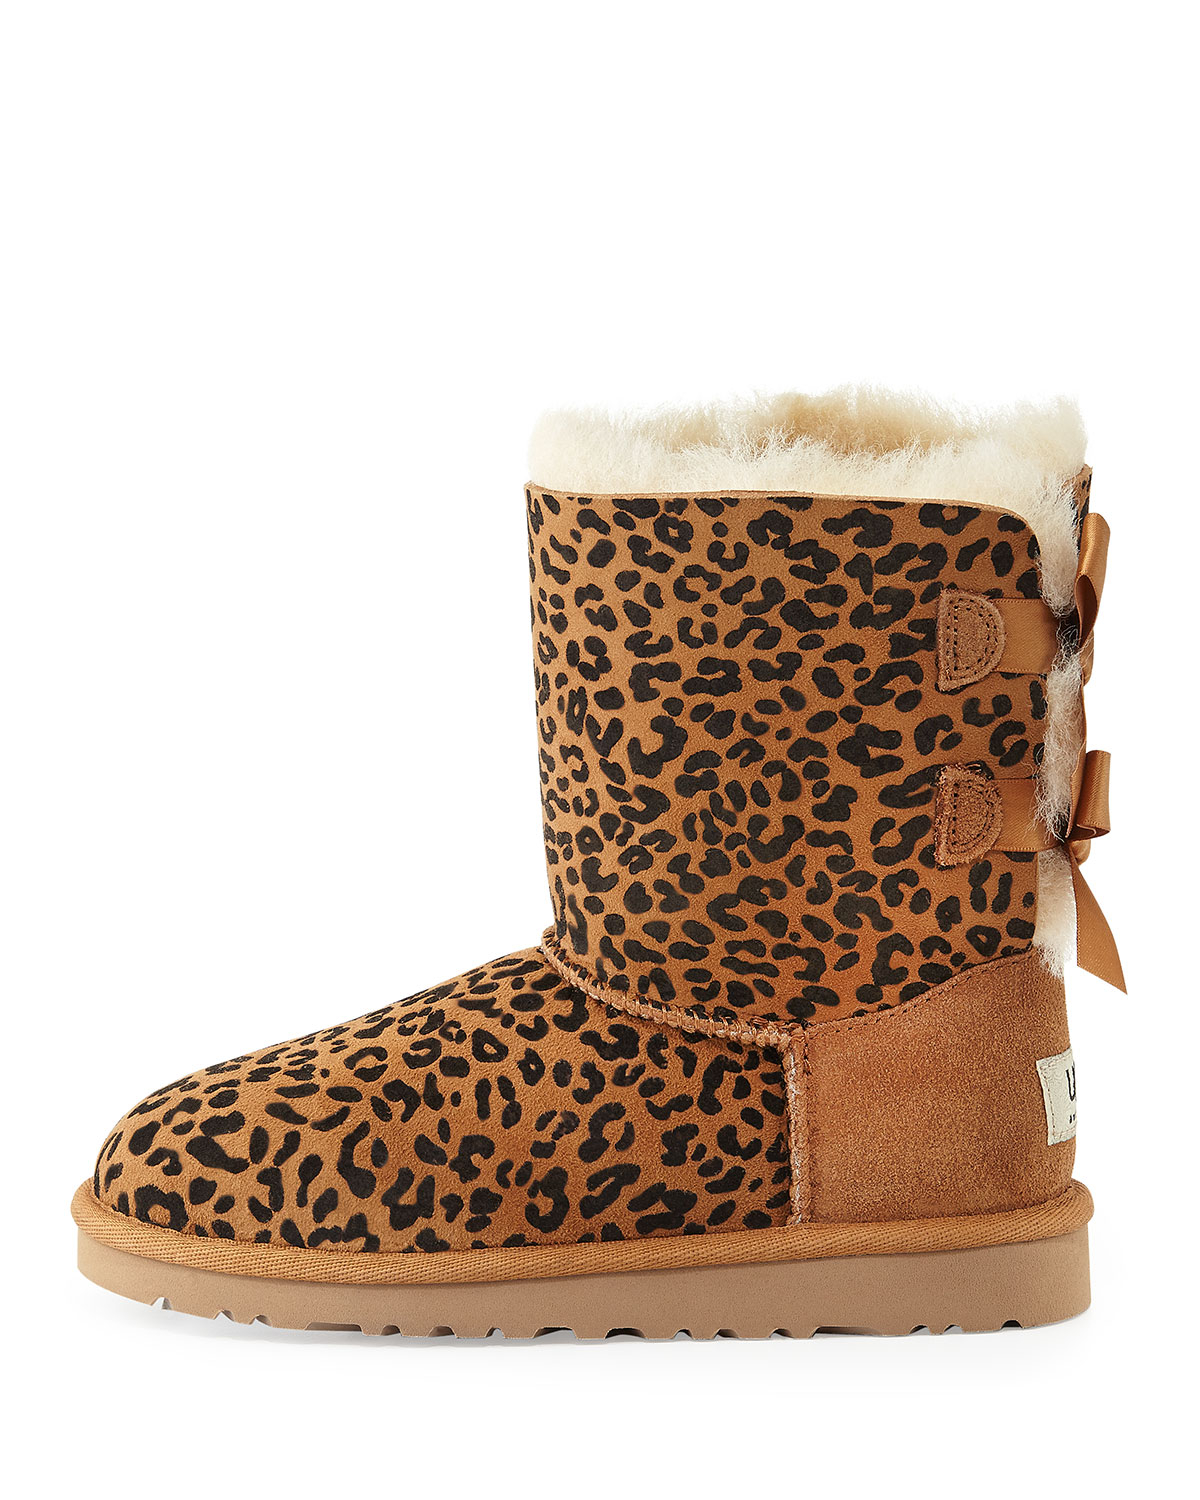 kids leopard print boots